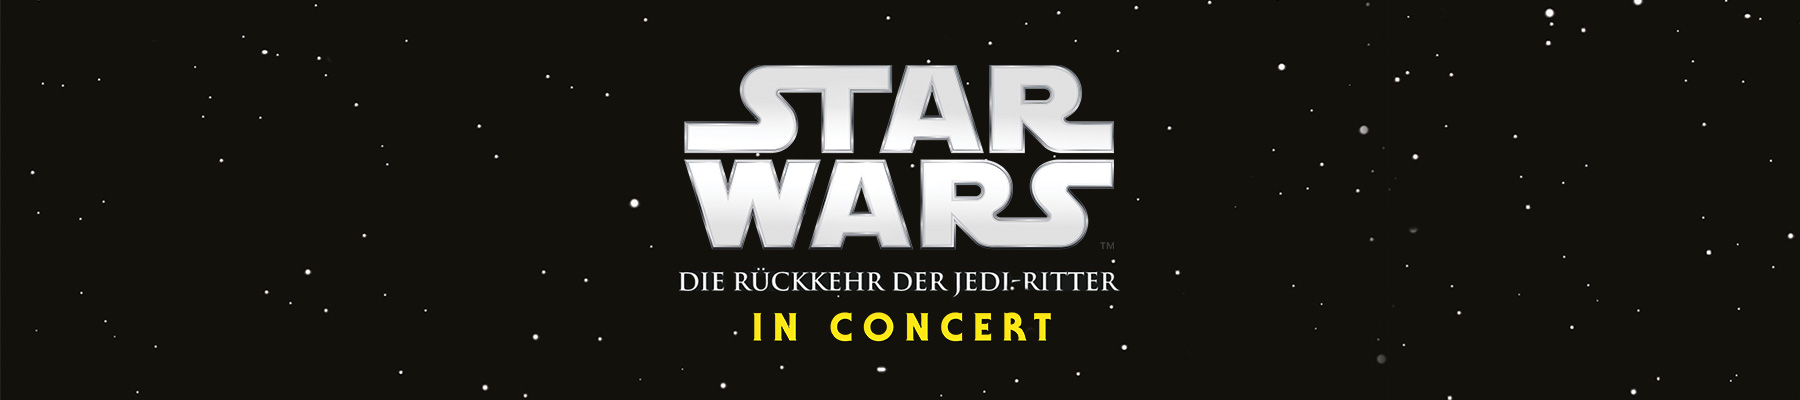 STAR WARS VI in Concert - Die Rückkehr der Jedi-Ritter - Titelbanner